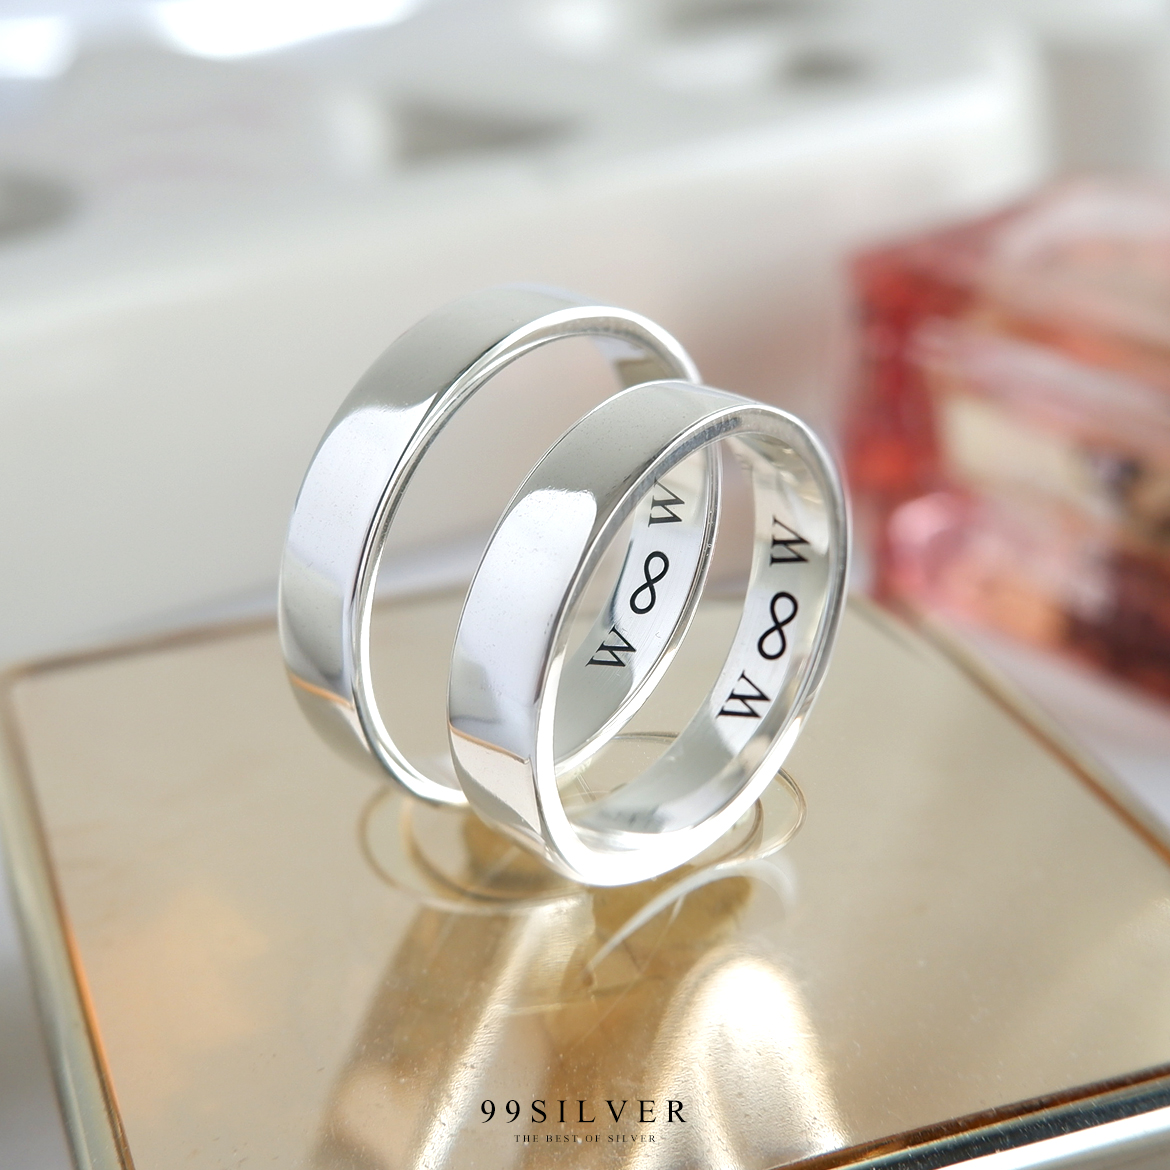 Set แหวนคู่รักสองวง เงินแท้รุ่นมาตรฐาน หน้ากว้าง 4 มิลลิเมตร หนา 1.2 มิลลิเมตร